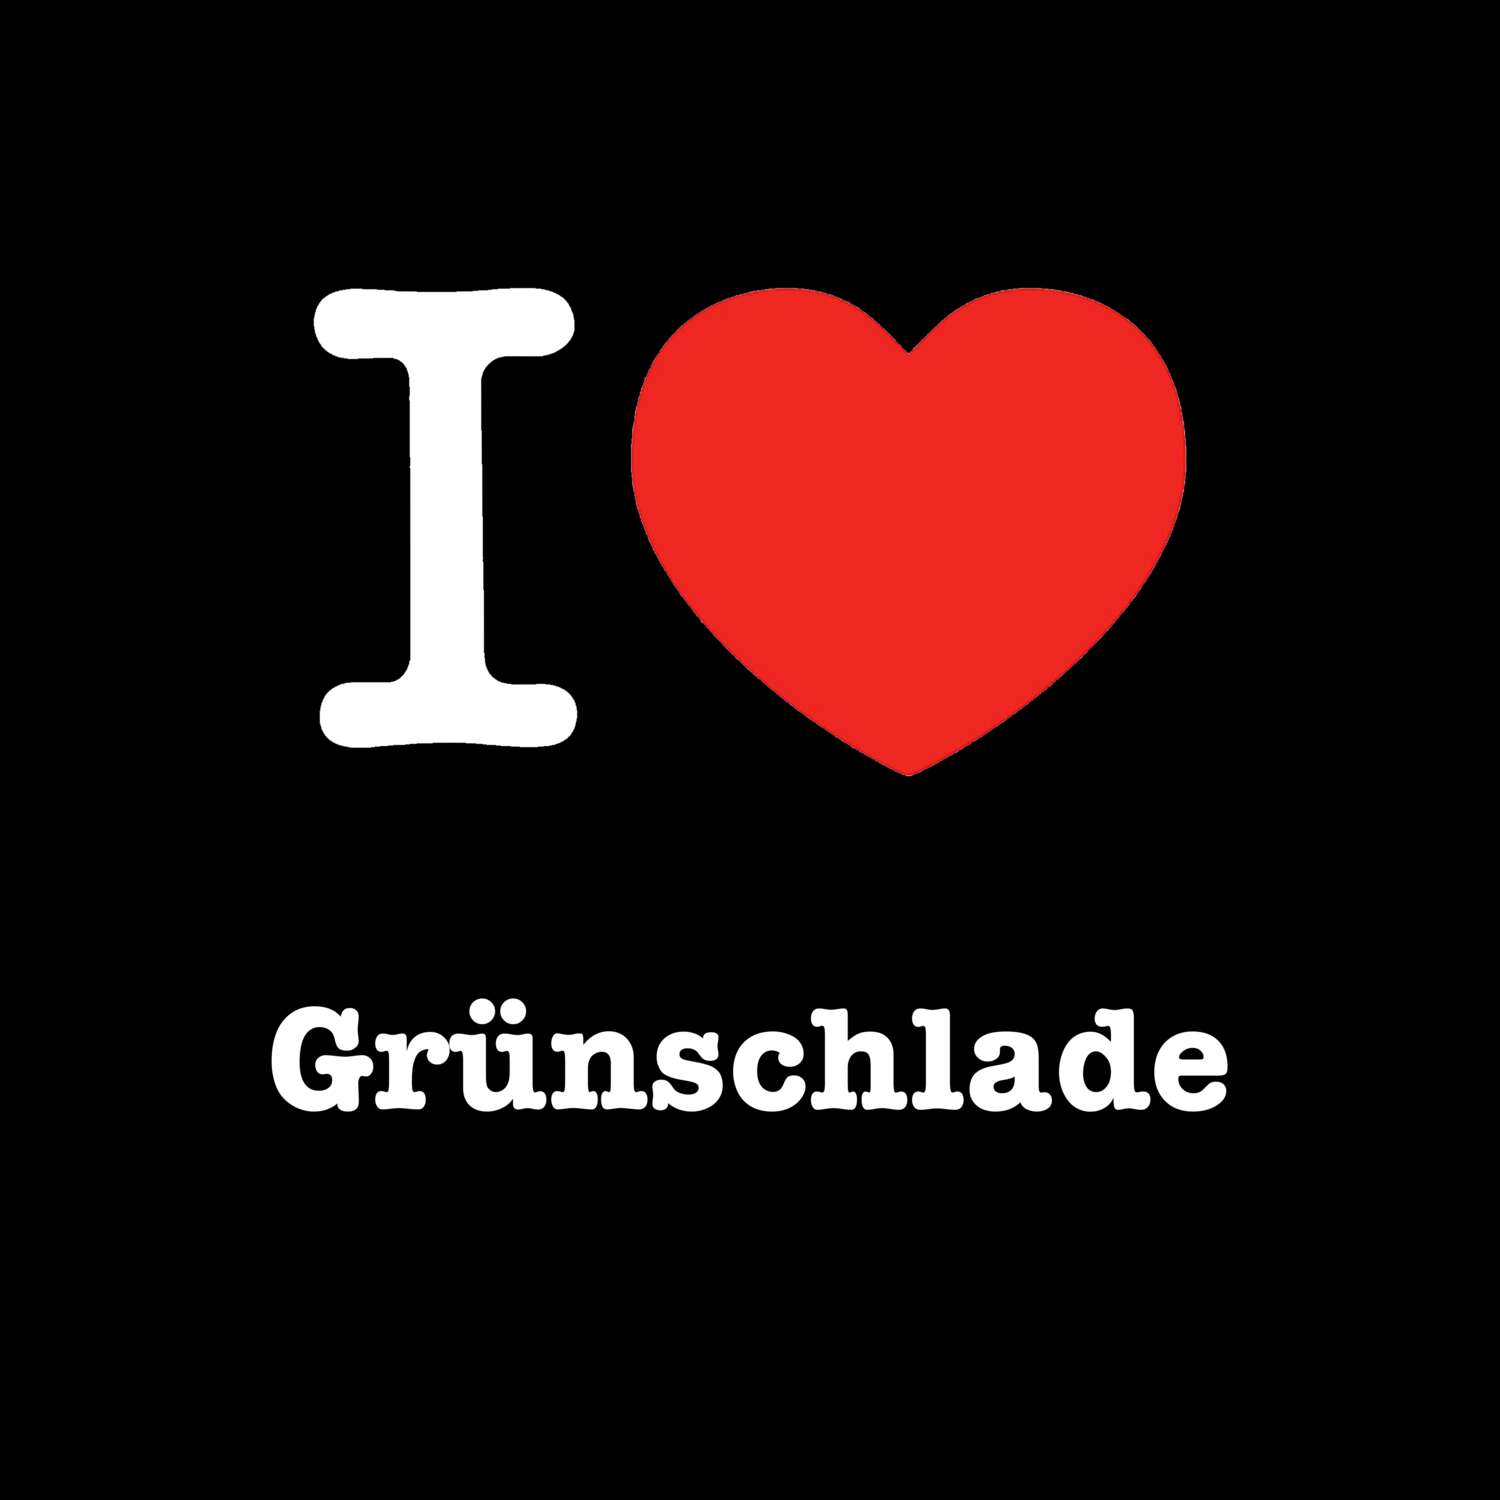 Grünschlade T-Shirt »I love«